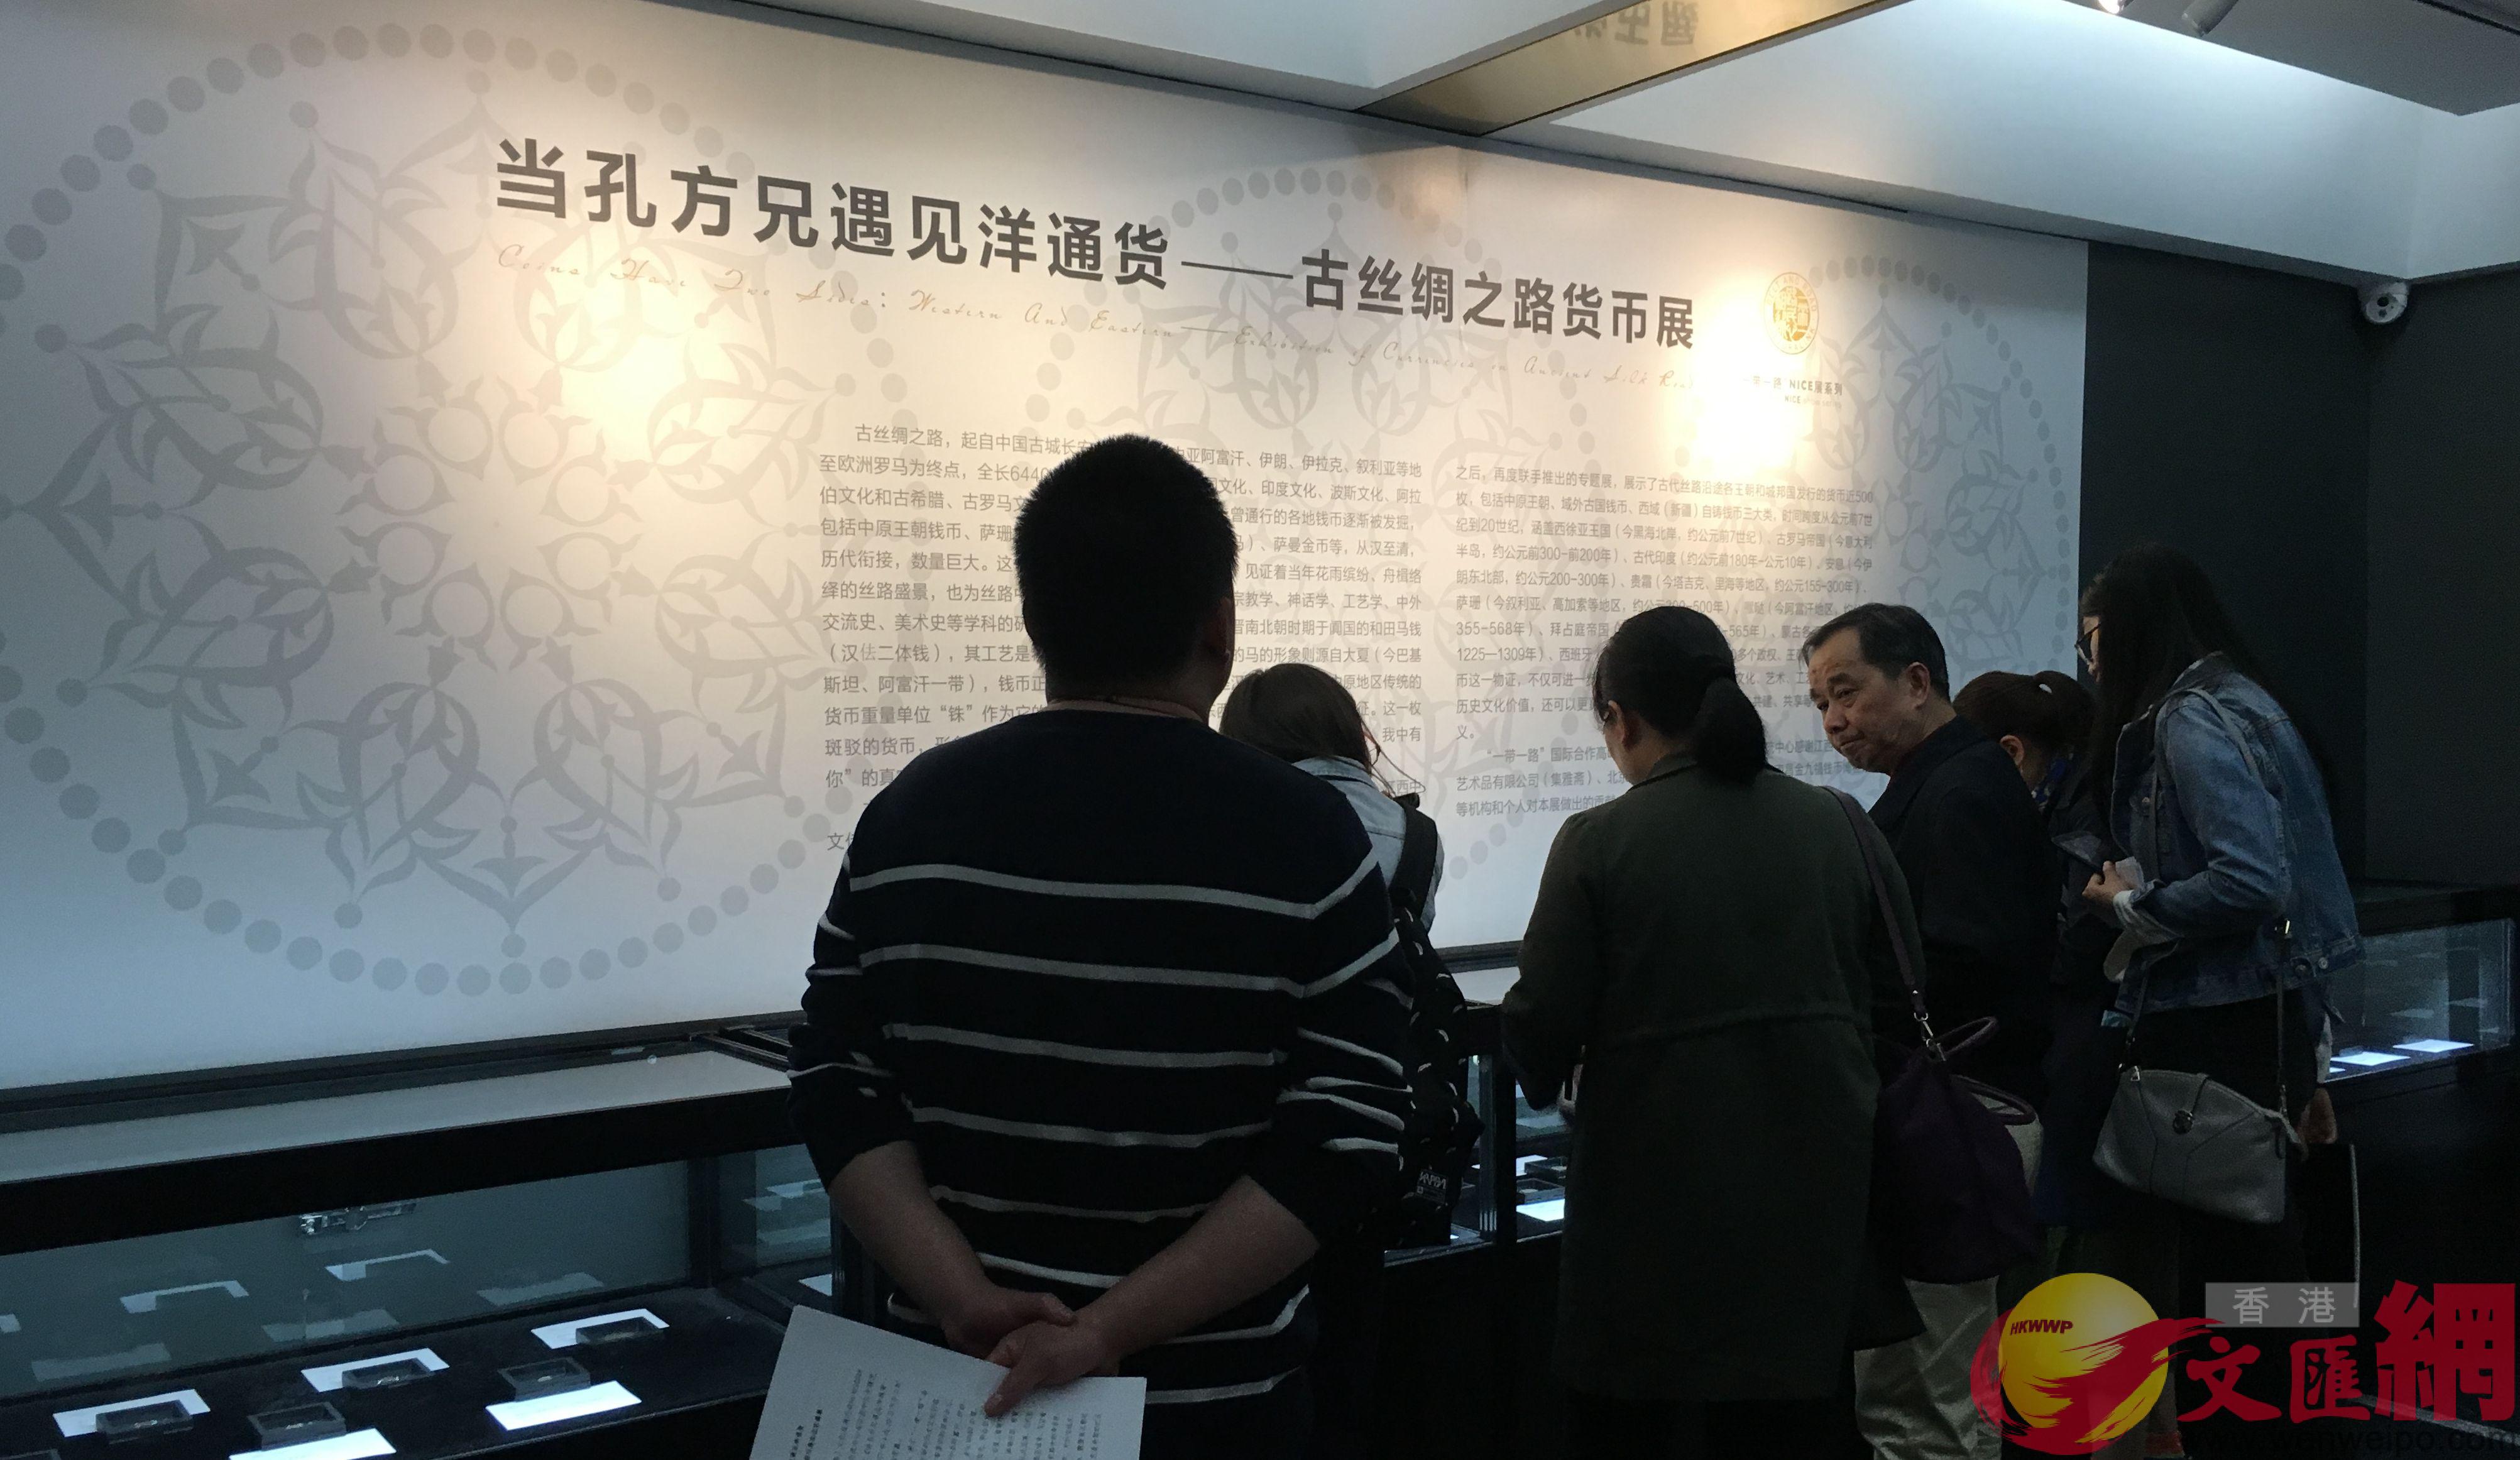 《当孔方兄遇见洋通货——古丝绸之路货币展》20日北京开幕。江鑫娴摄